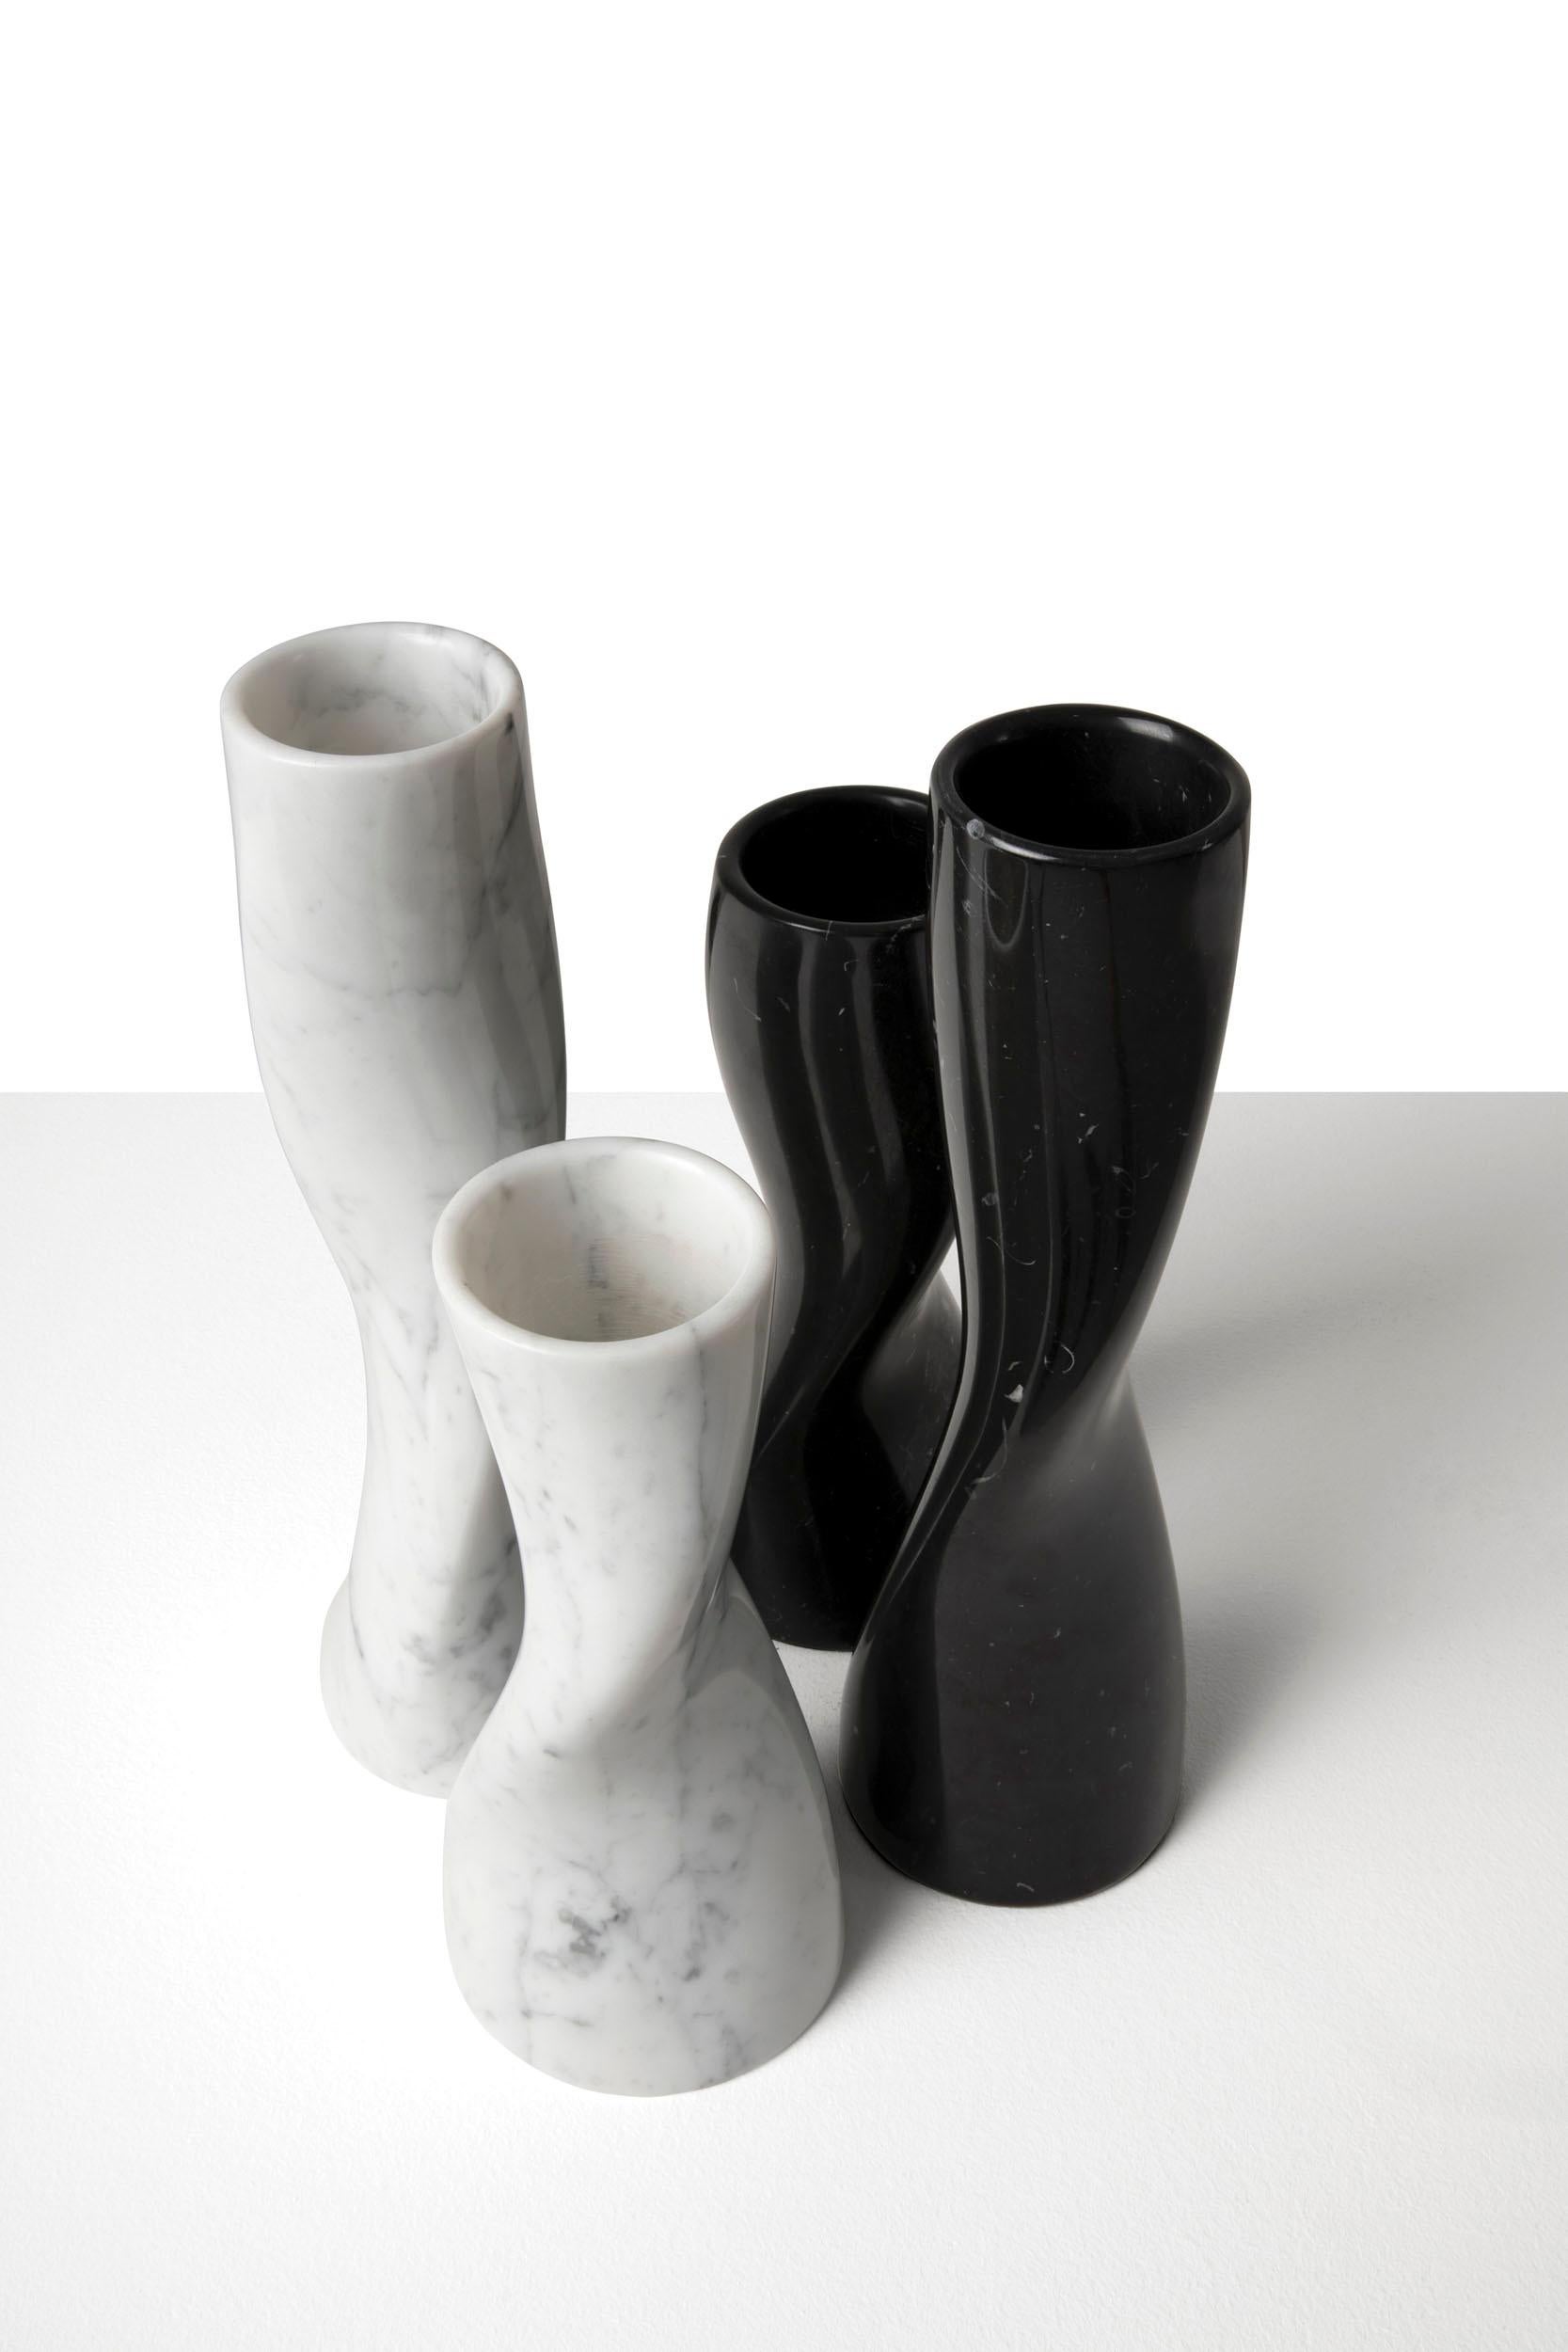 Vase en marbre dont la forme sinueuse est générée par la torsion d'un cylindre autour de son axe principal. È
disponible en deux tailles en Carrara White et Nero Marquina.
Les formes de Hineri et le choix du marbre, un matériau aussi durable que